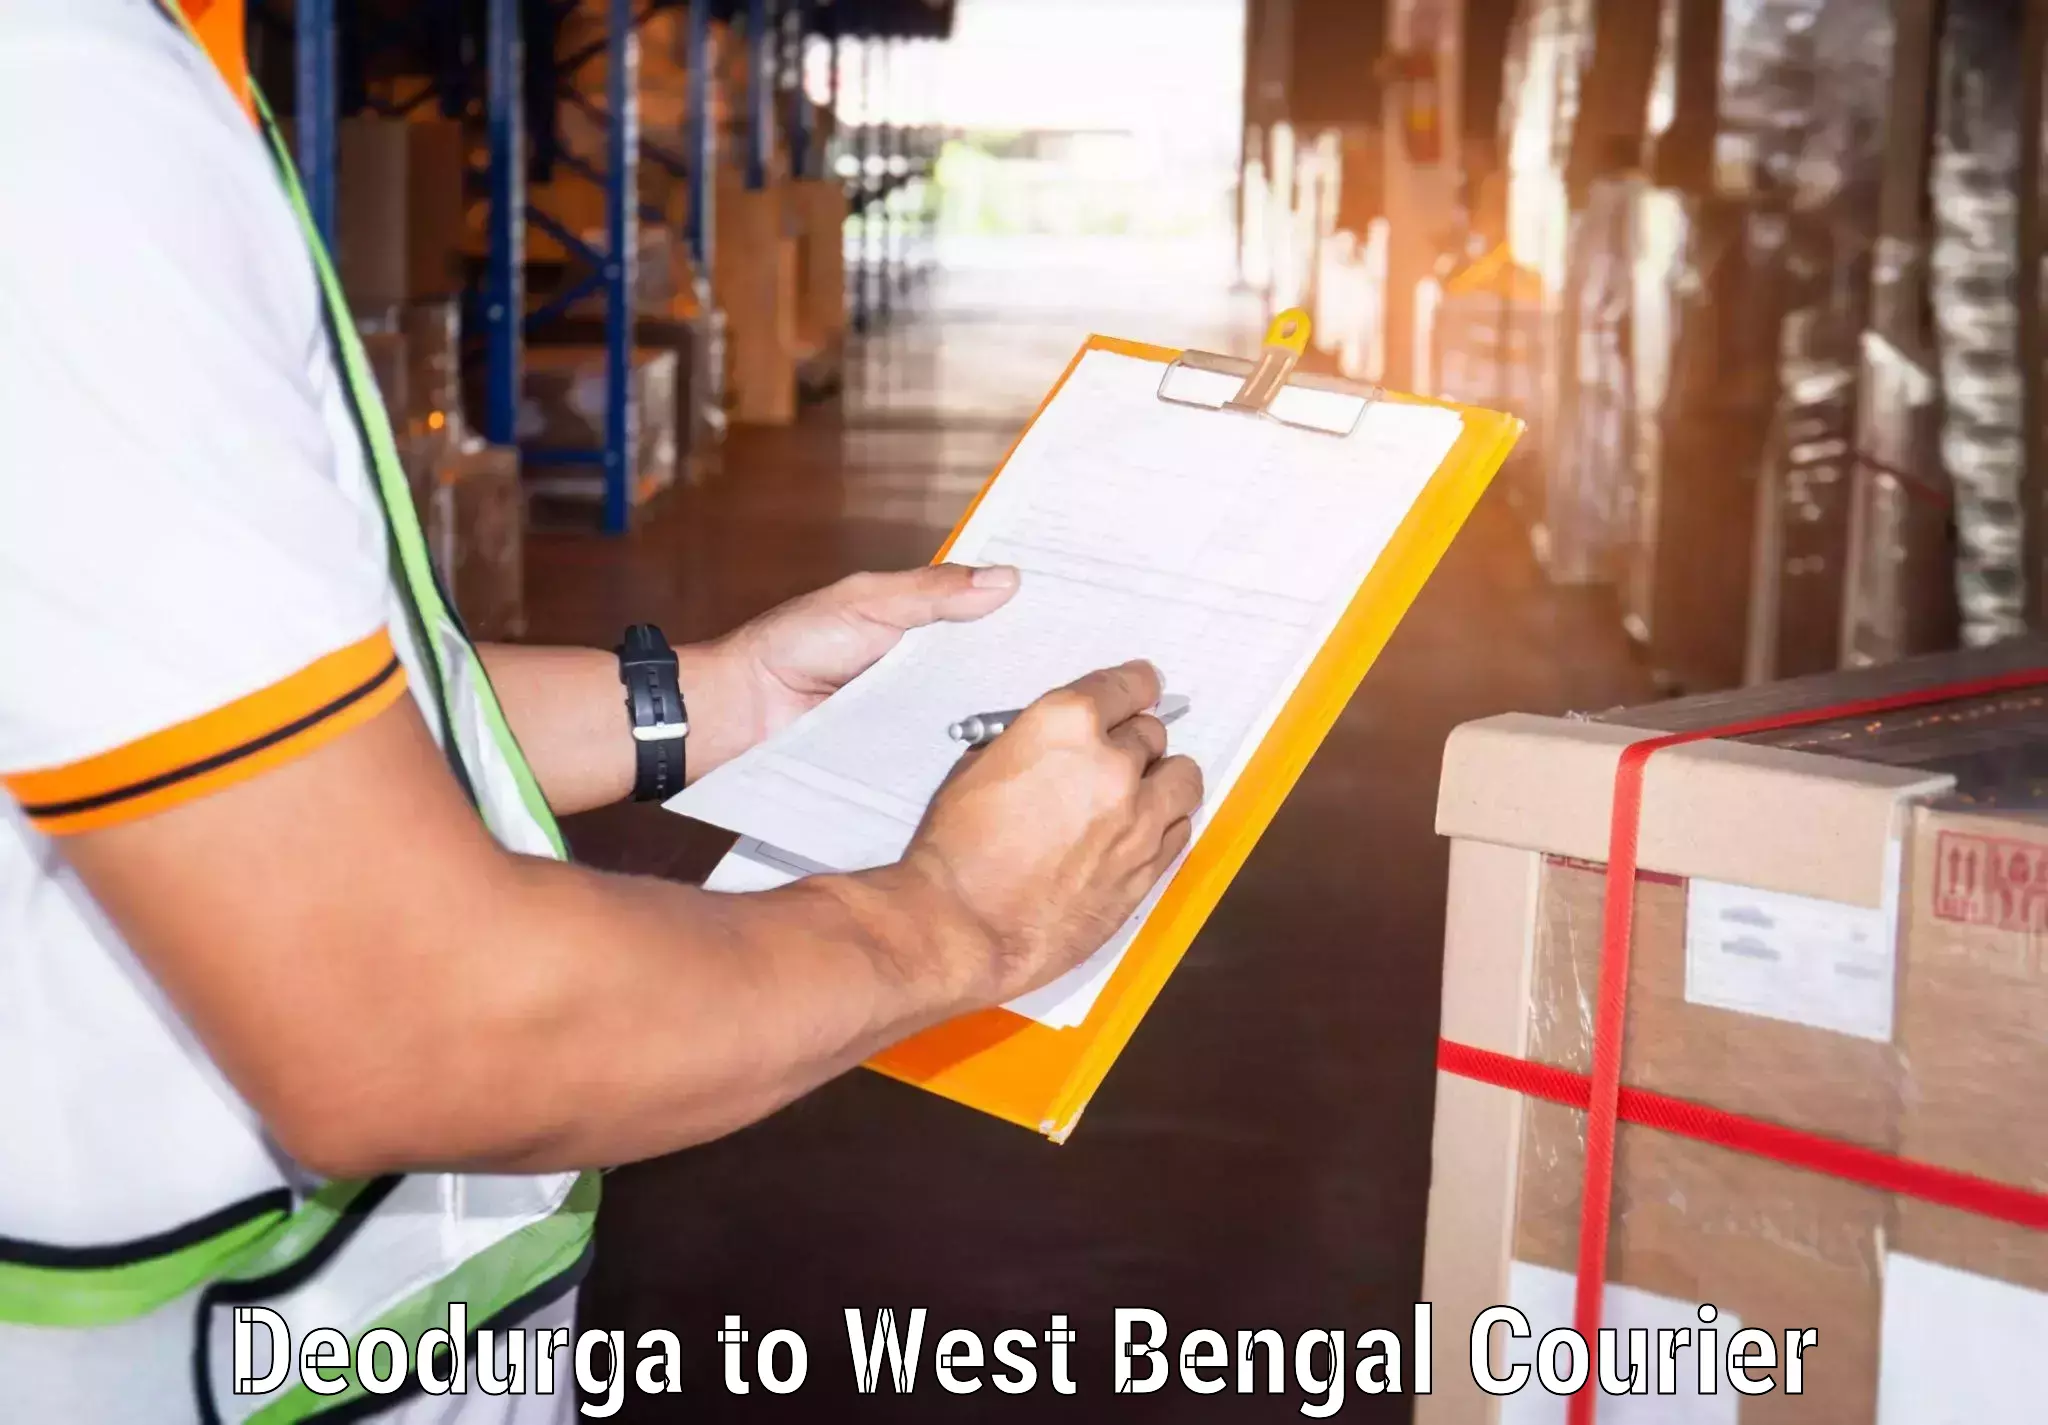 Global freight services Deodurga to Dhatrigram